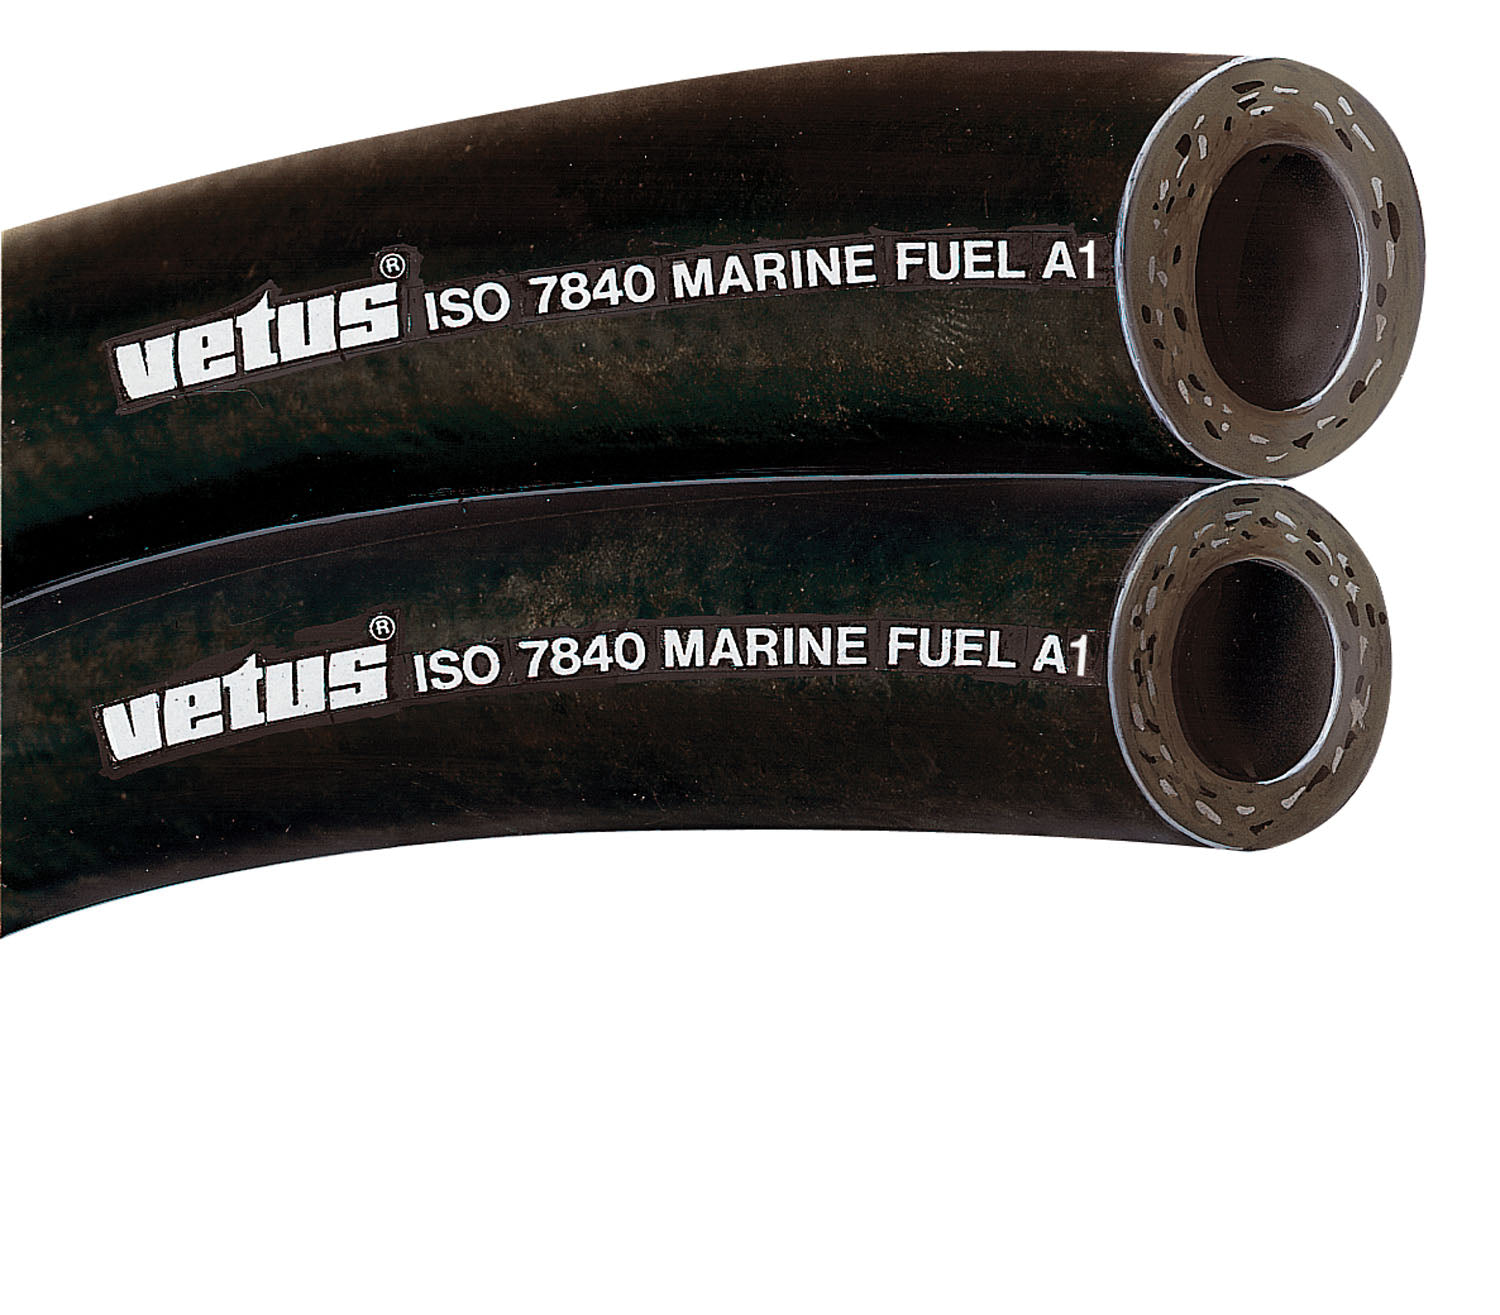 Vetus FUHOSE16A - Fuel hose 16x25mm iso7840-marine fuel A1